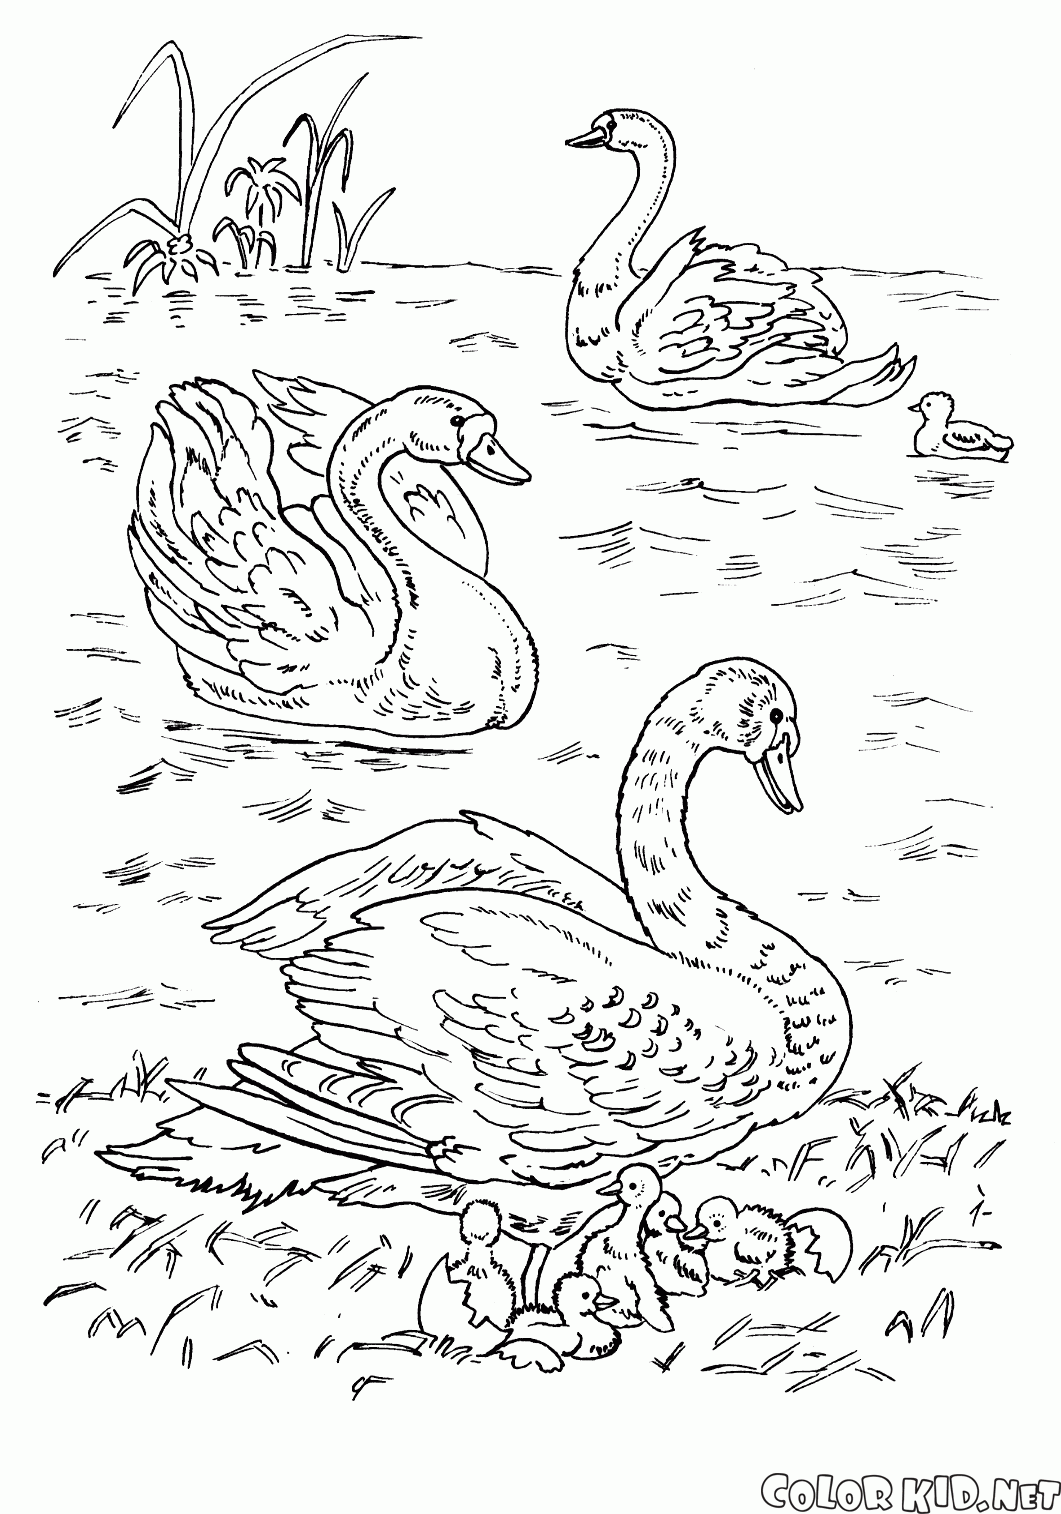 Cigni sul lago